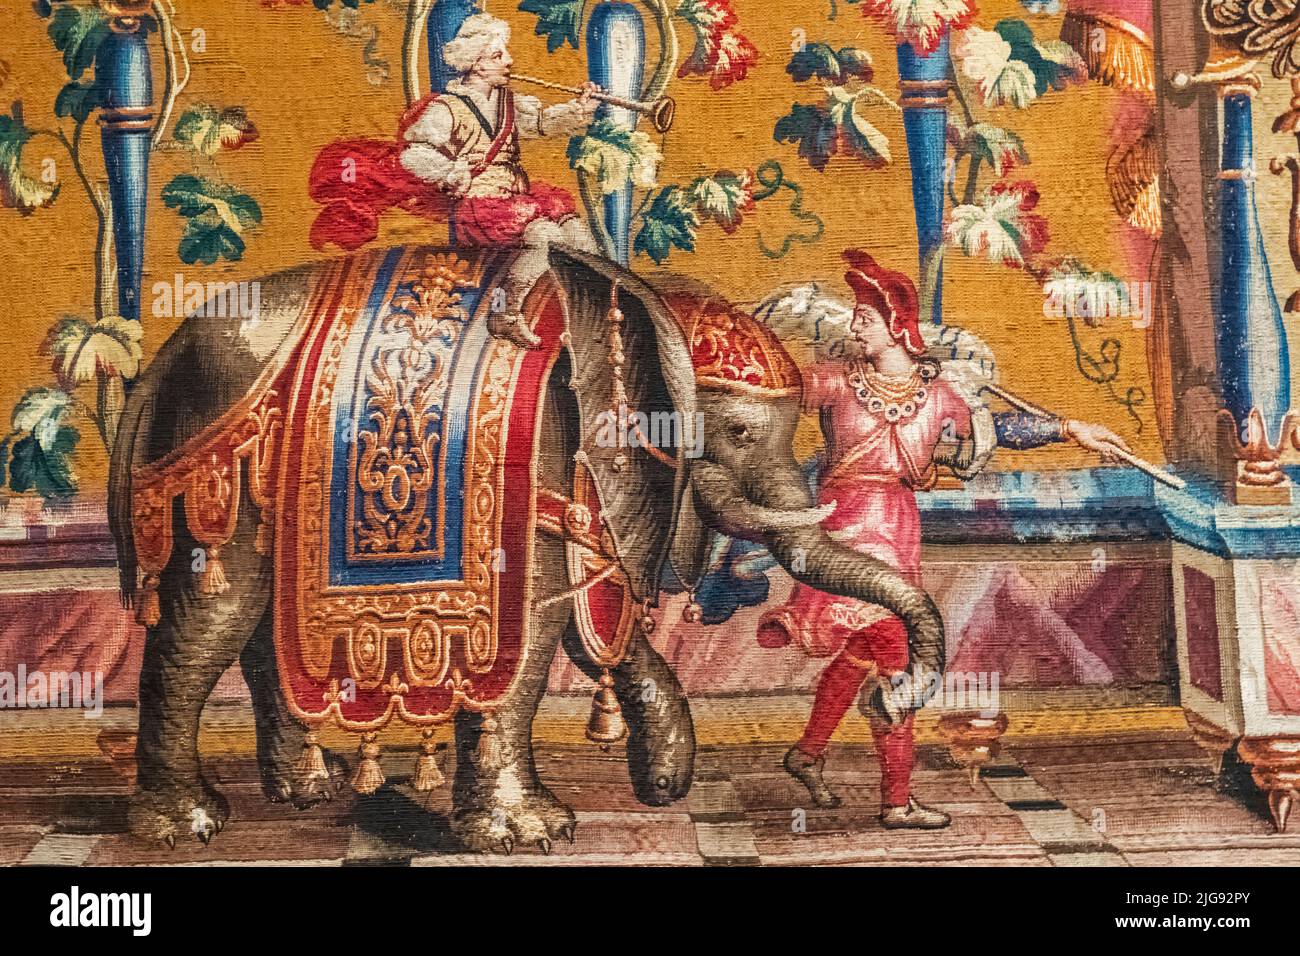 Inghilterra, Londra, Knightsbridge, Victoria and Albert Museum, arazzo francese raffigurante un elefante marciante con costume colorato datato 1720 Foto Stock